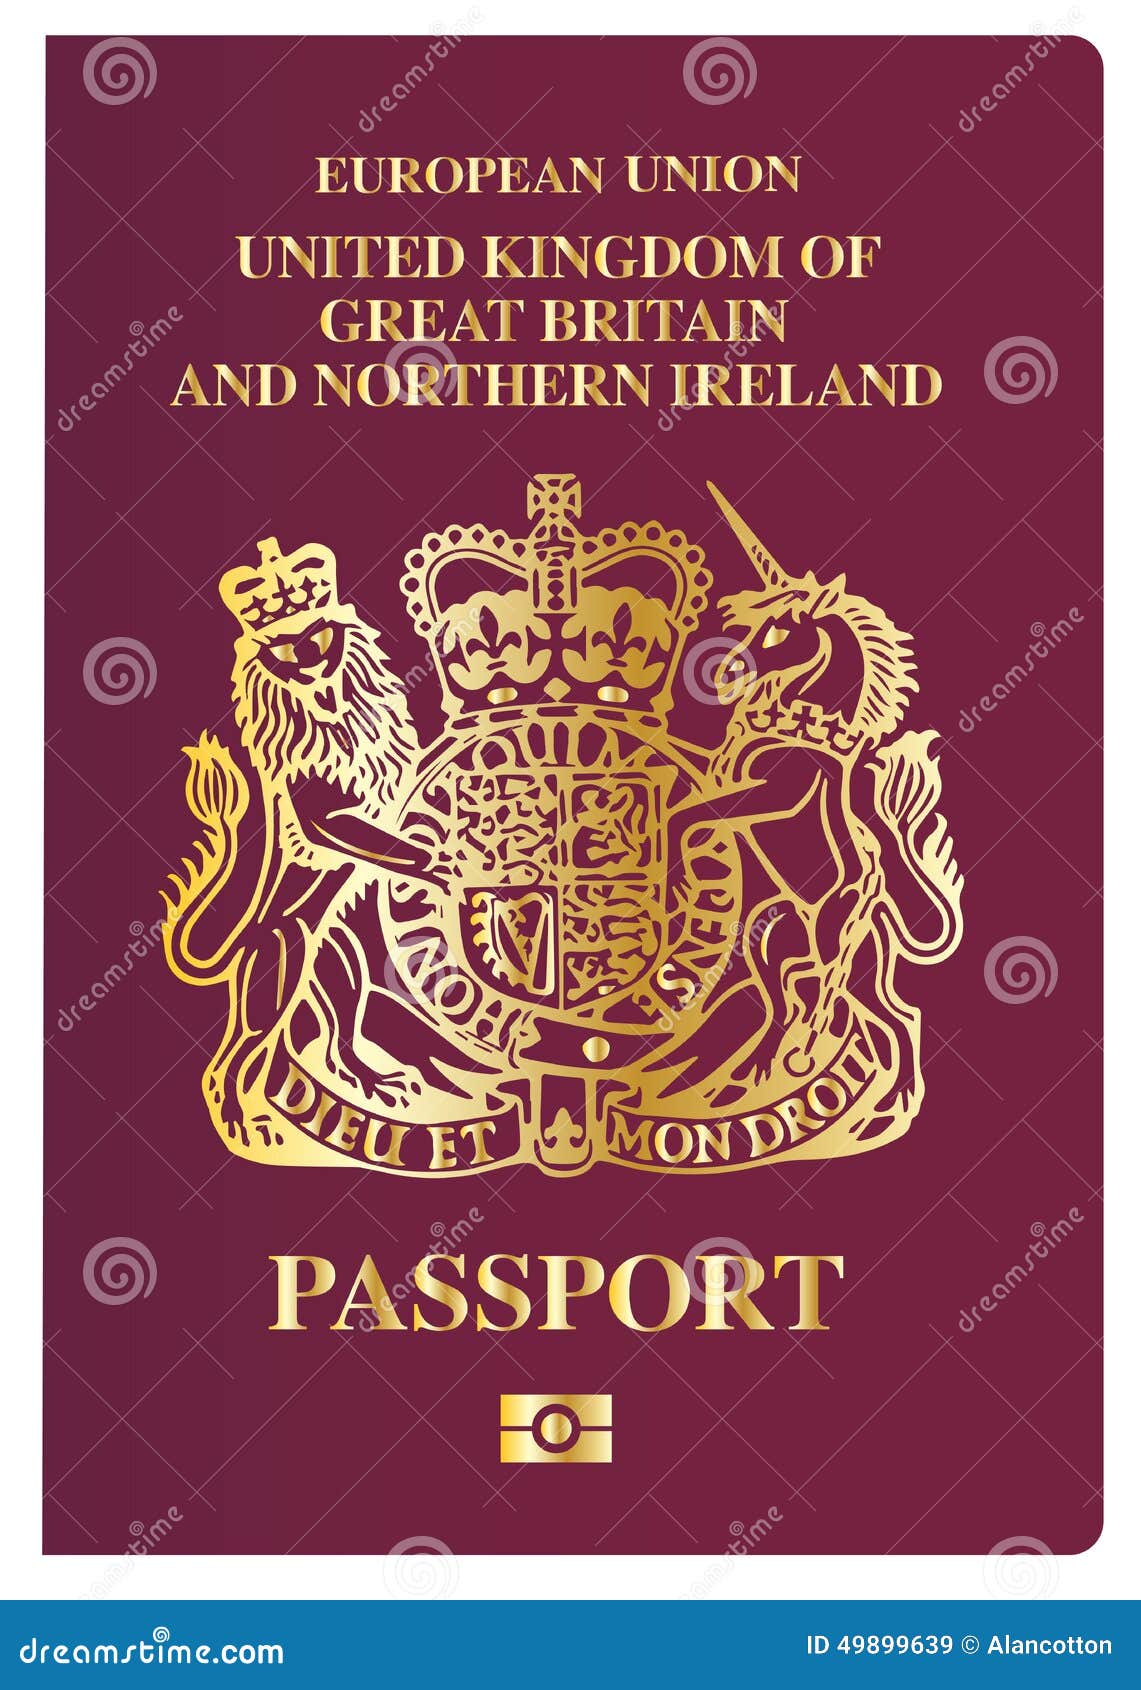 British Passport Cover Stock Illustrations – 31 British Passport